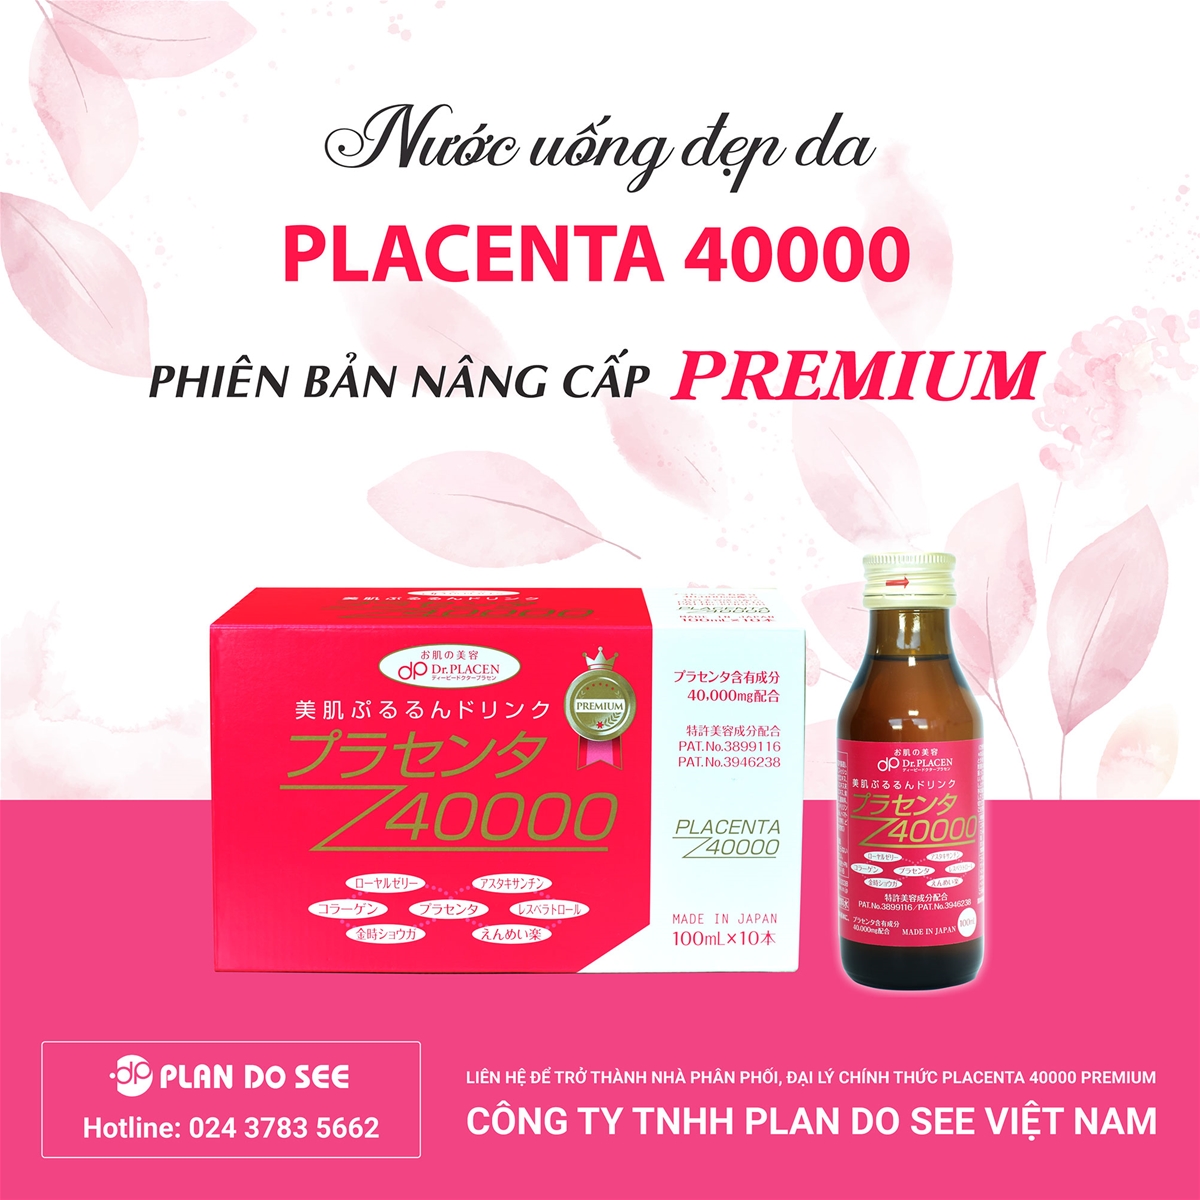 Cơ hội hợp tác kinh doanh cùng sản phẩm Placenta 40000 Premium - Nhật Bản